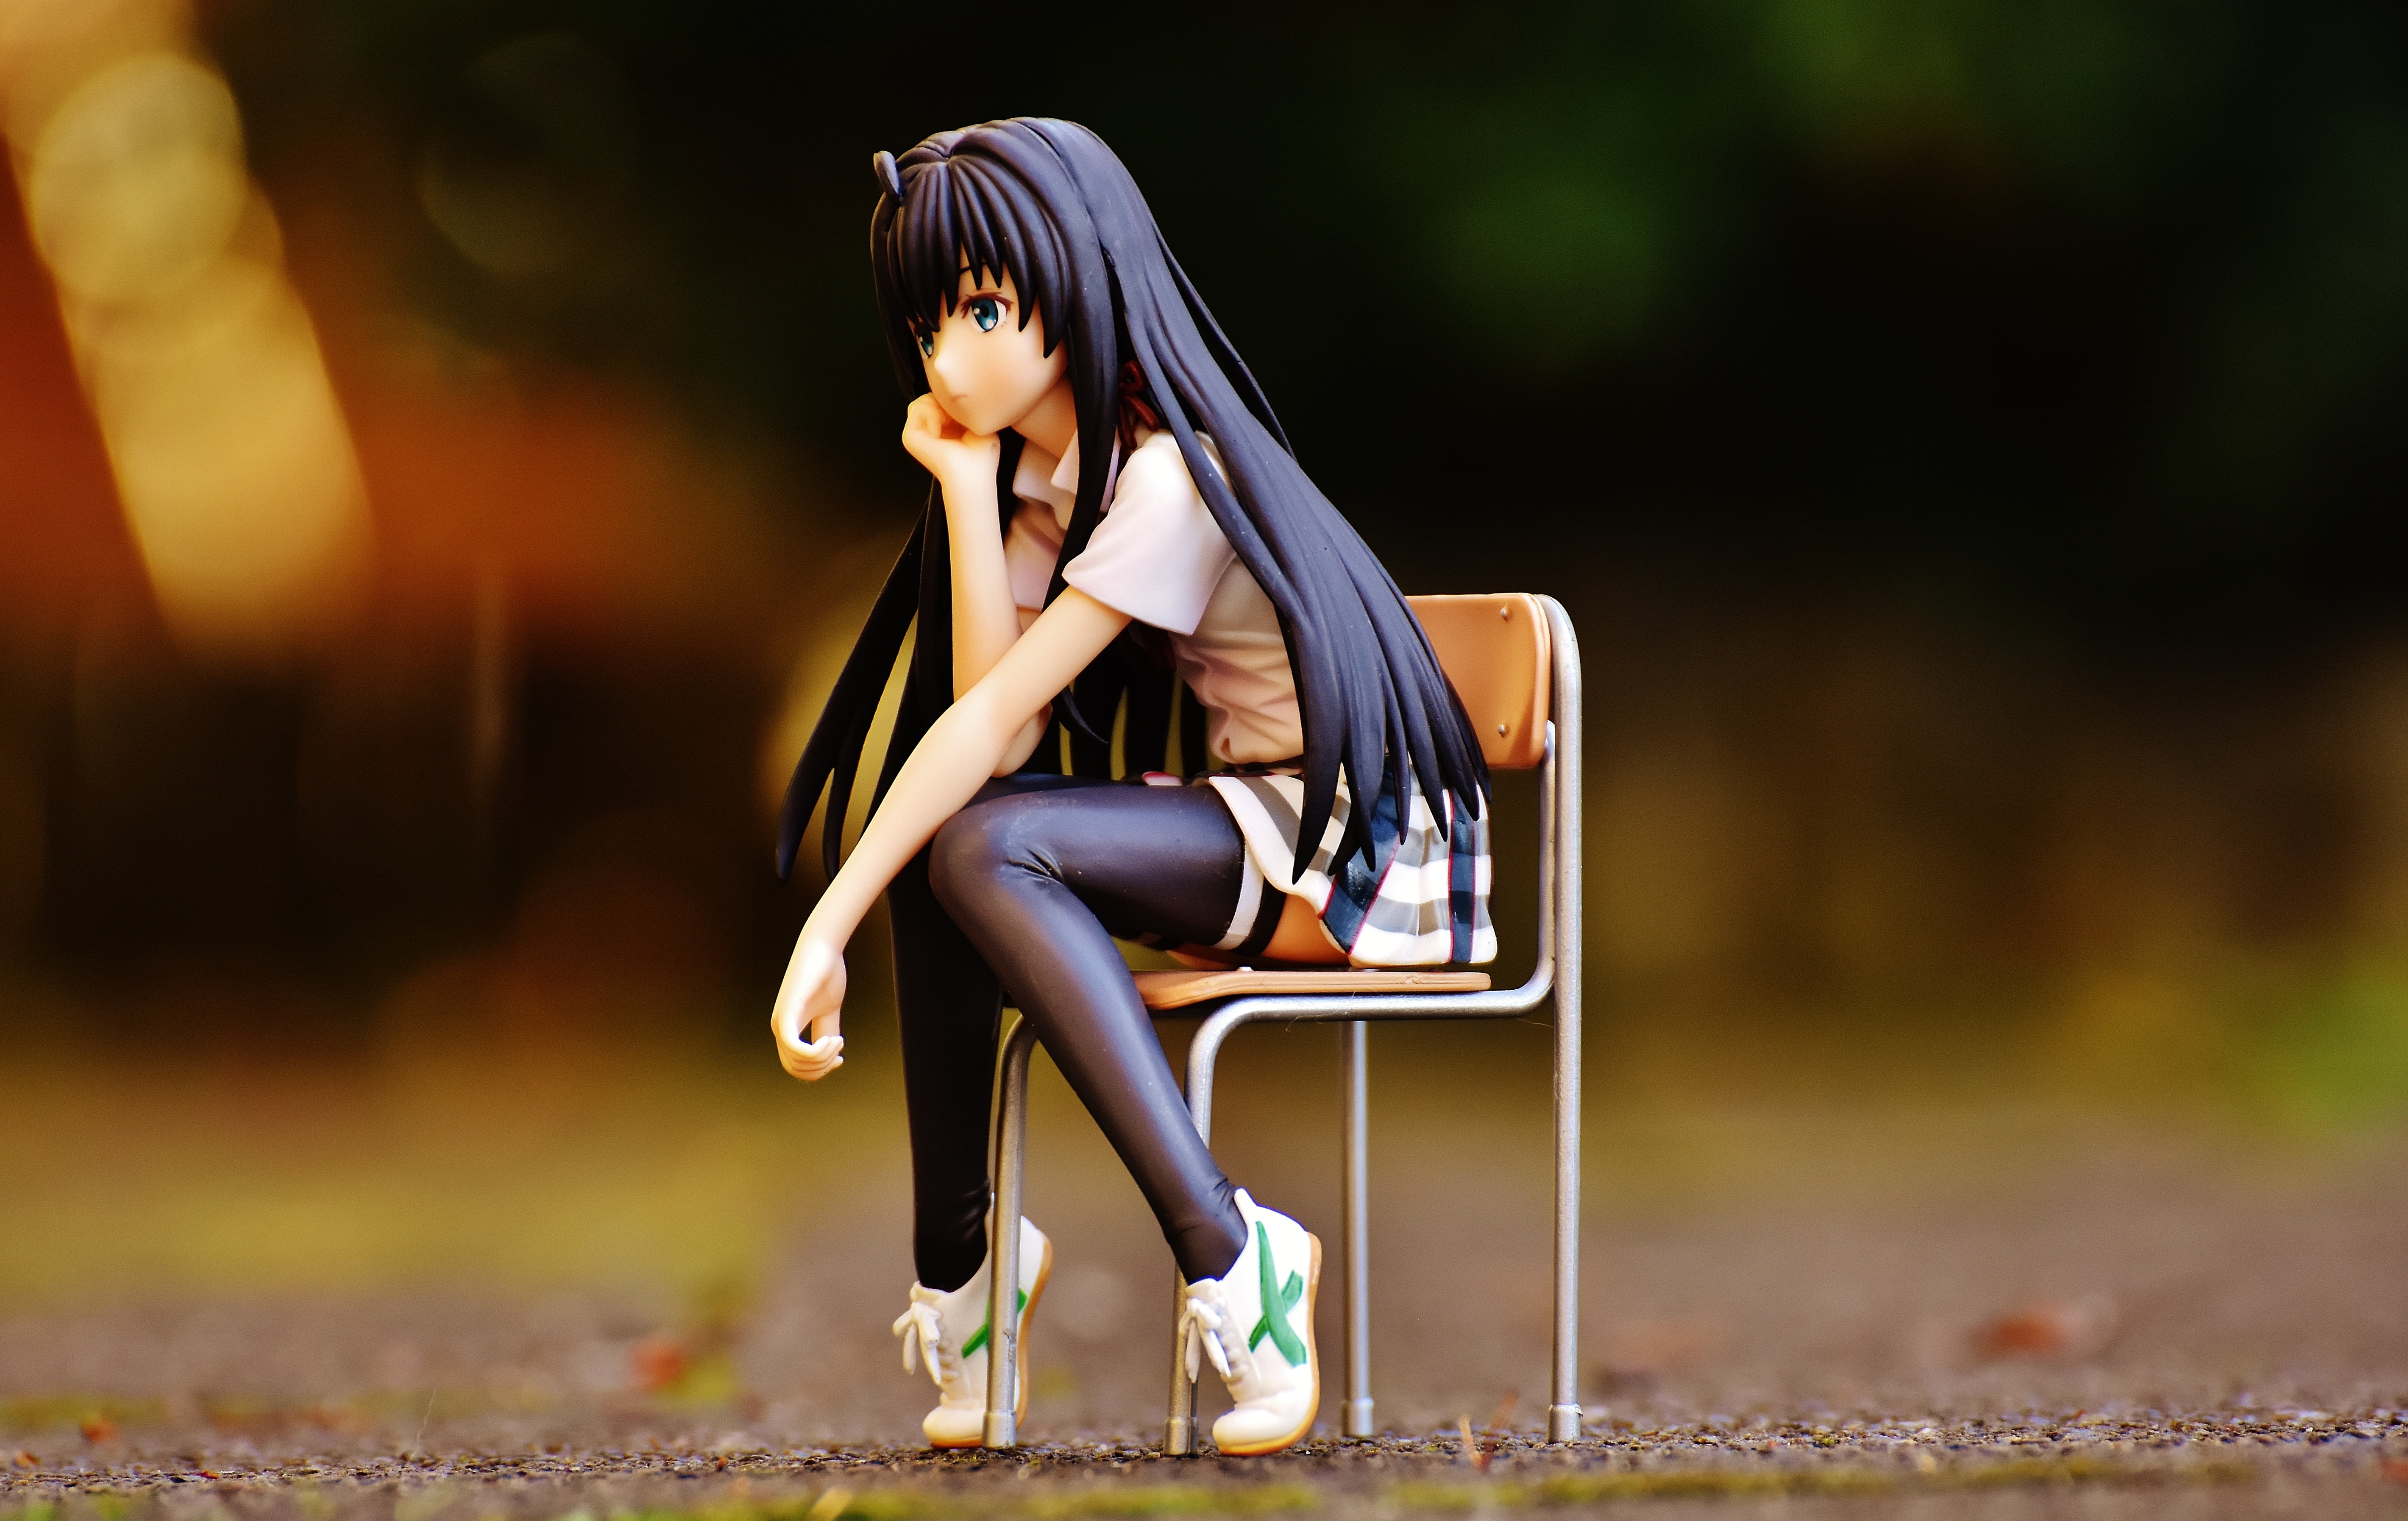 Anime girl sitting by TheLegitGuy on DeviantArt